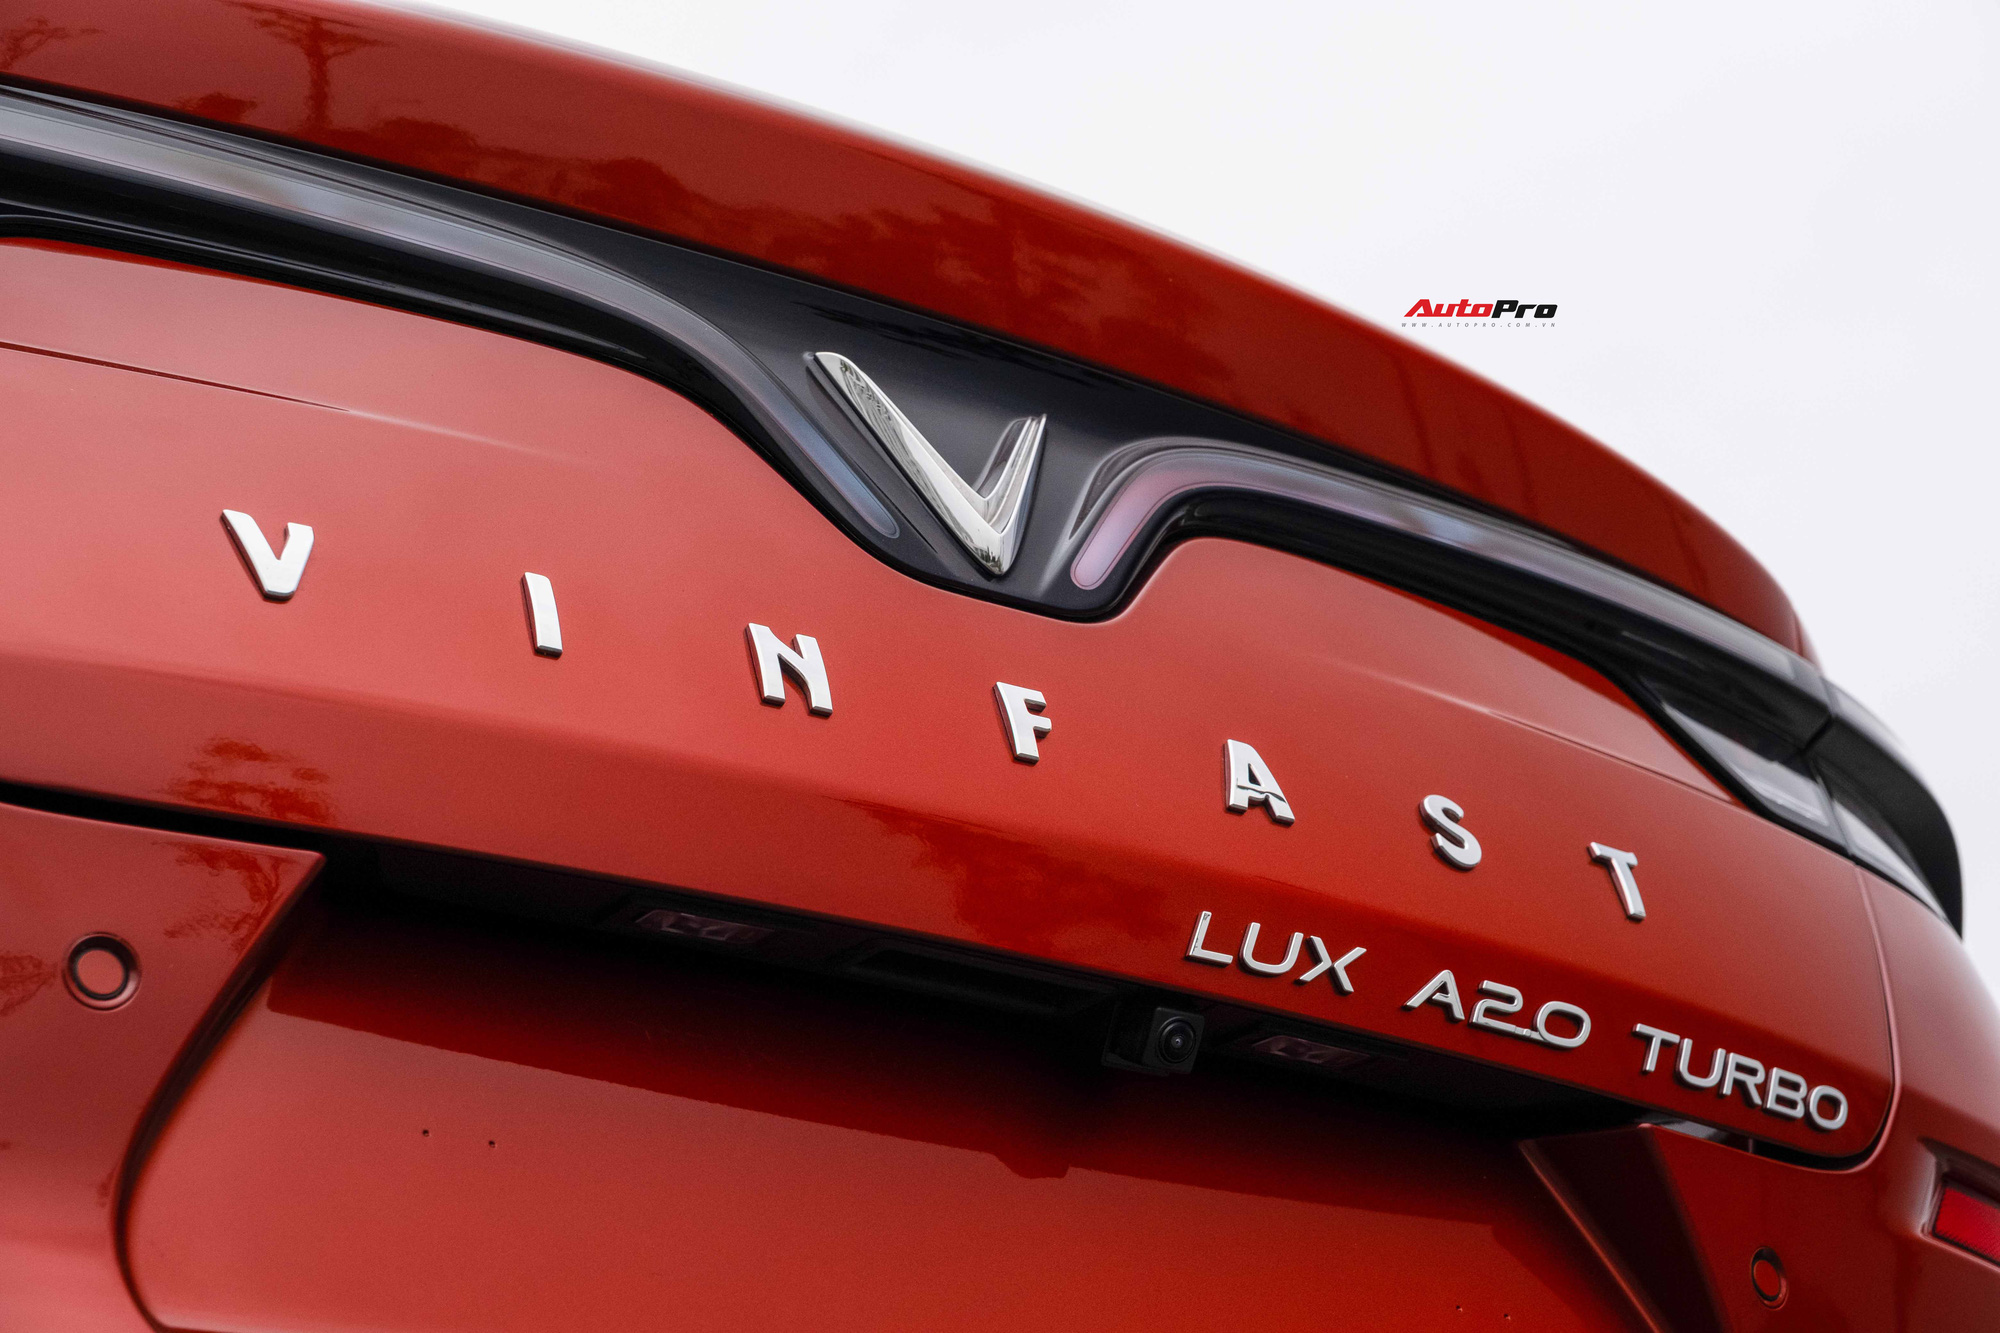 Vừa mua VinFast Lux A2.0 bản full còn chưa đăng ký đã vội lên SA2.0, chủ xe nhượng lại giá 950 triệu đồng - Ảnh 3.